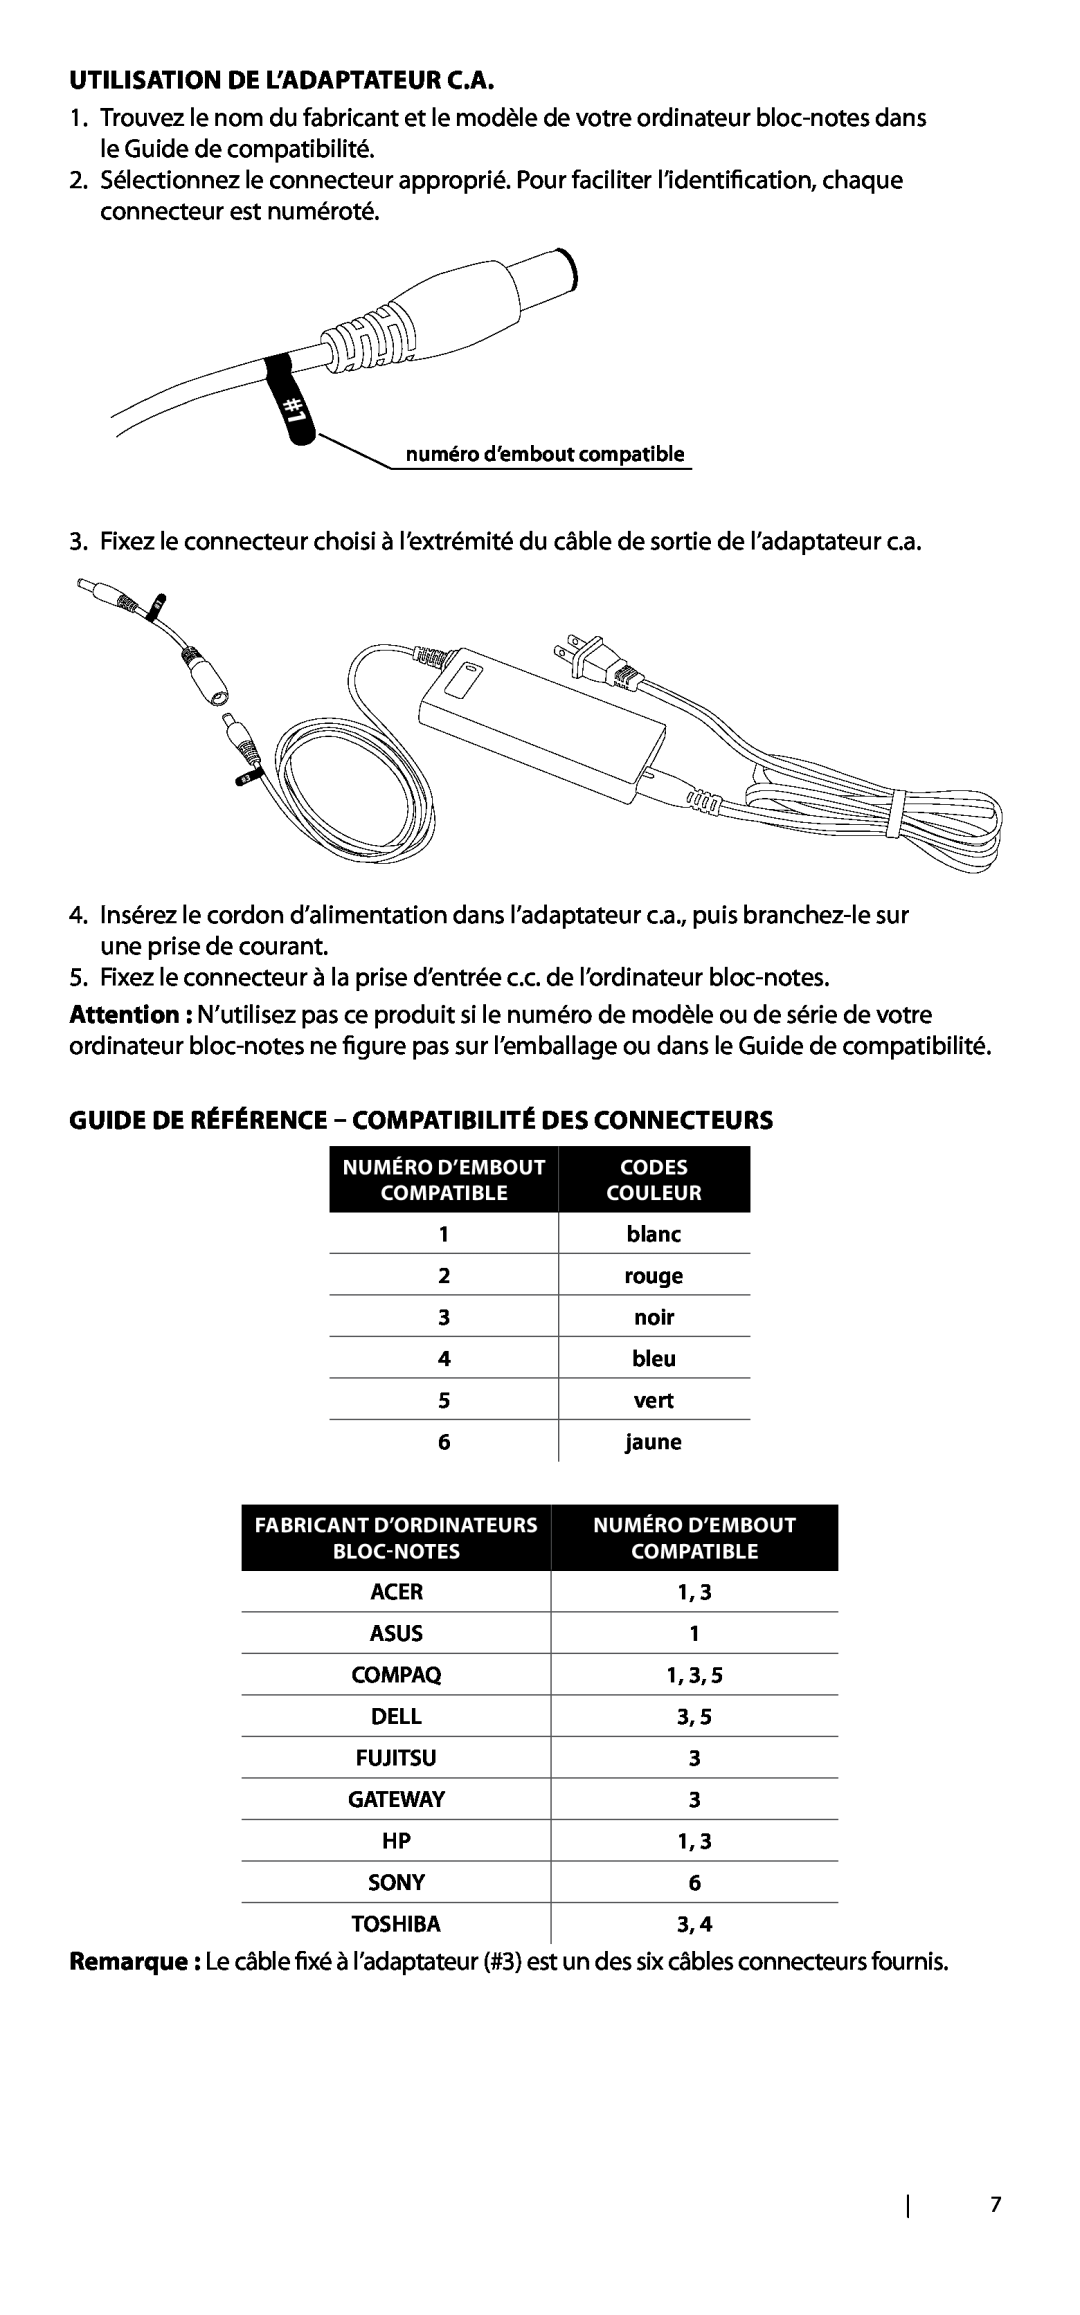 DigiPower AC-SP590 manual Utilisation de l’adaptateur c.a, Guide de référence - compatibilité des connecteurs, blanc, 1, 3 